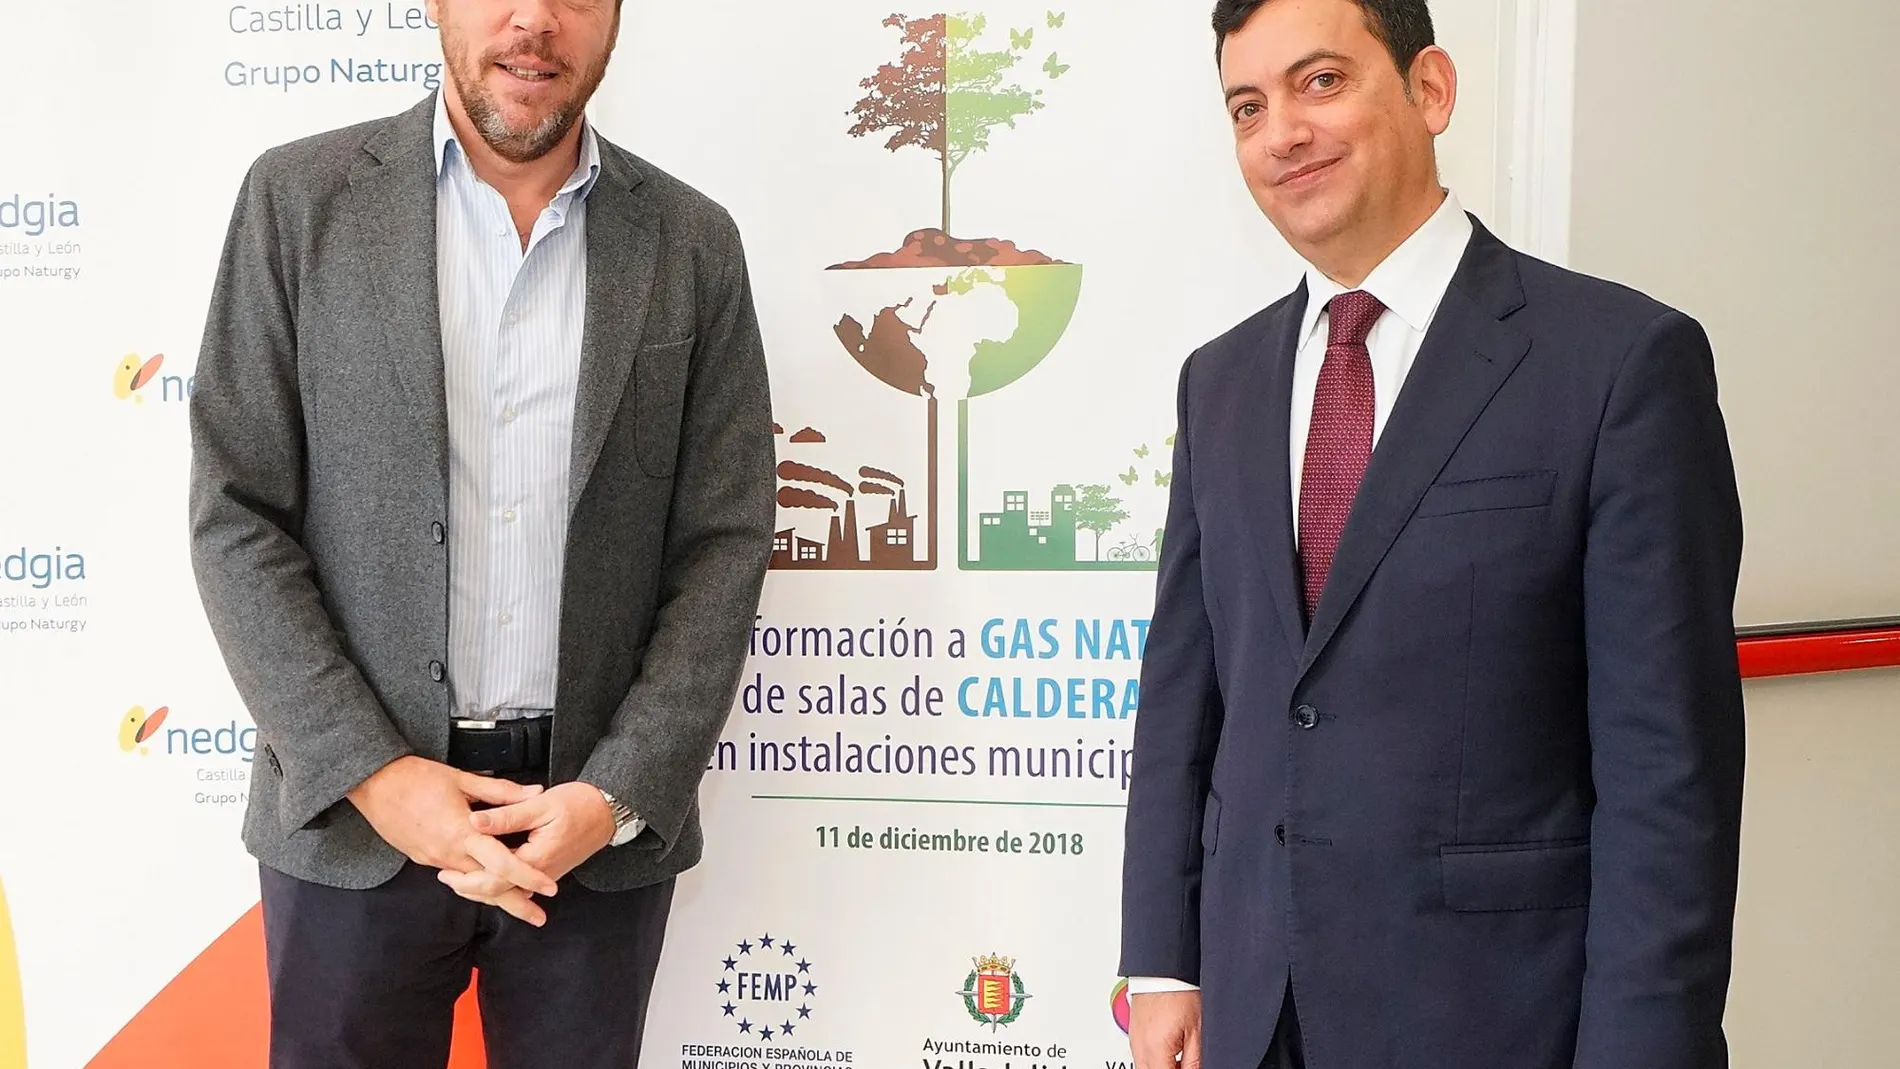 El alcalde de Valladolid, Óscar Puente, el director de Gran Consumo de Nedgia, Roberto Cámara, inauguran la jornada “Transformación a gas natural de salas de calderas en instalaciones municipales